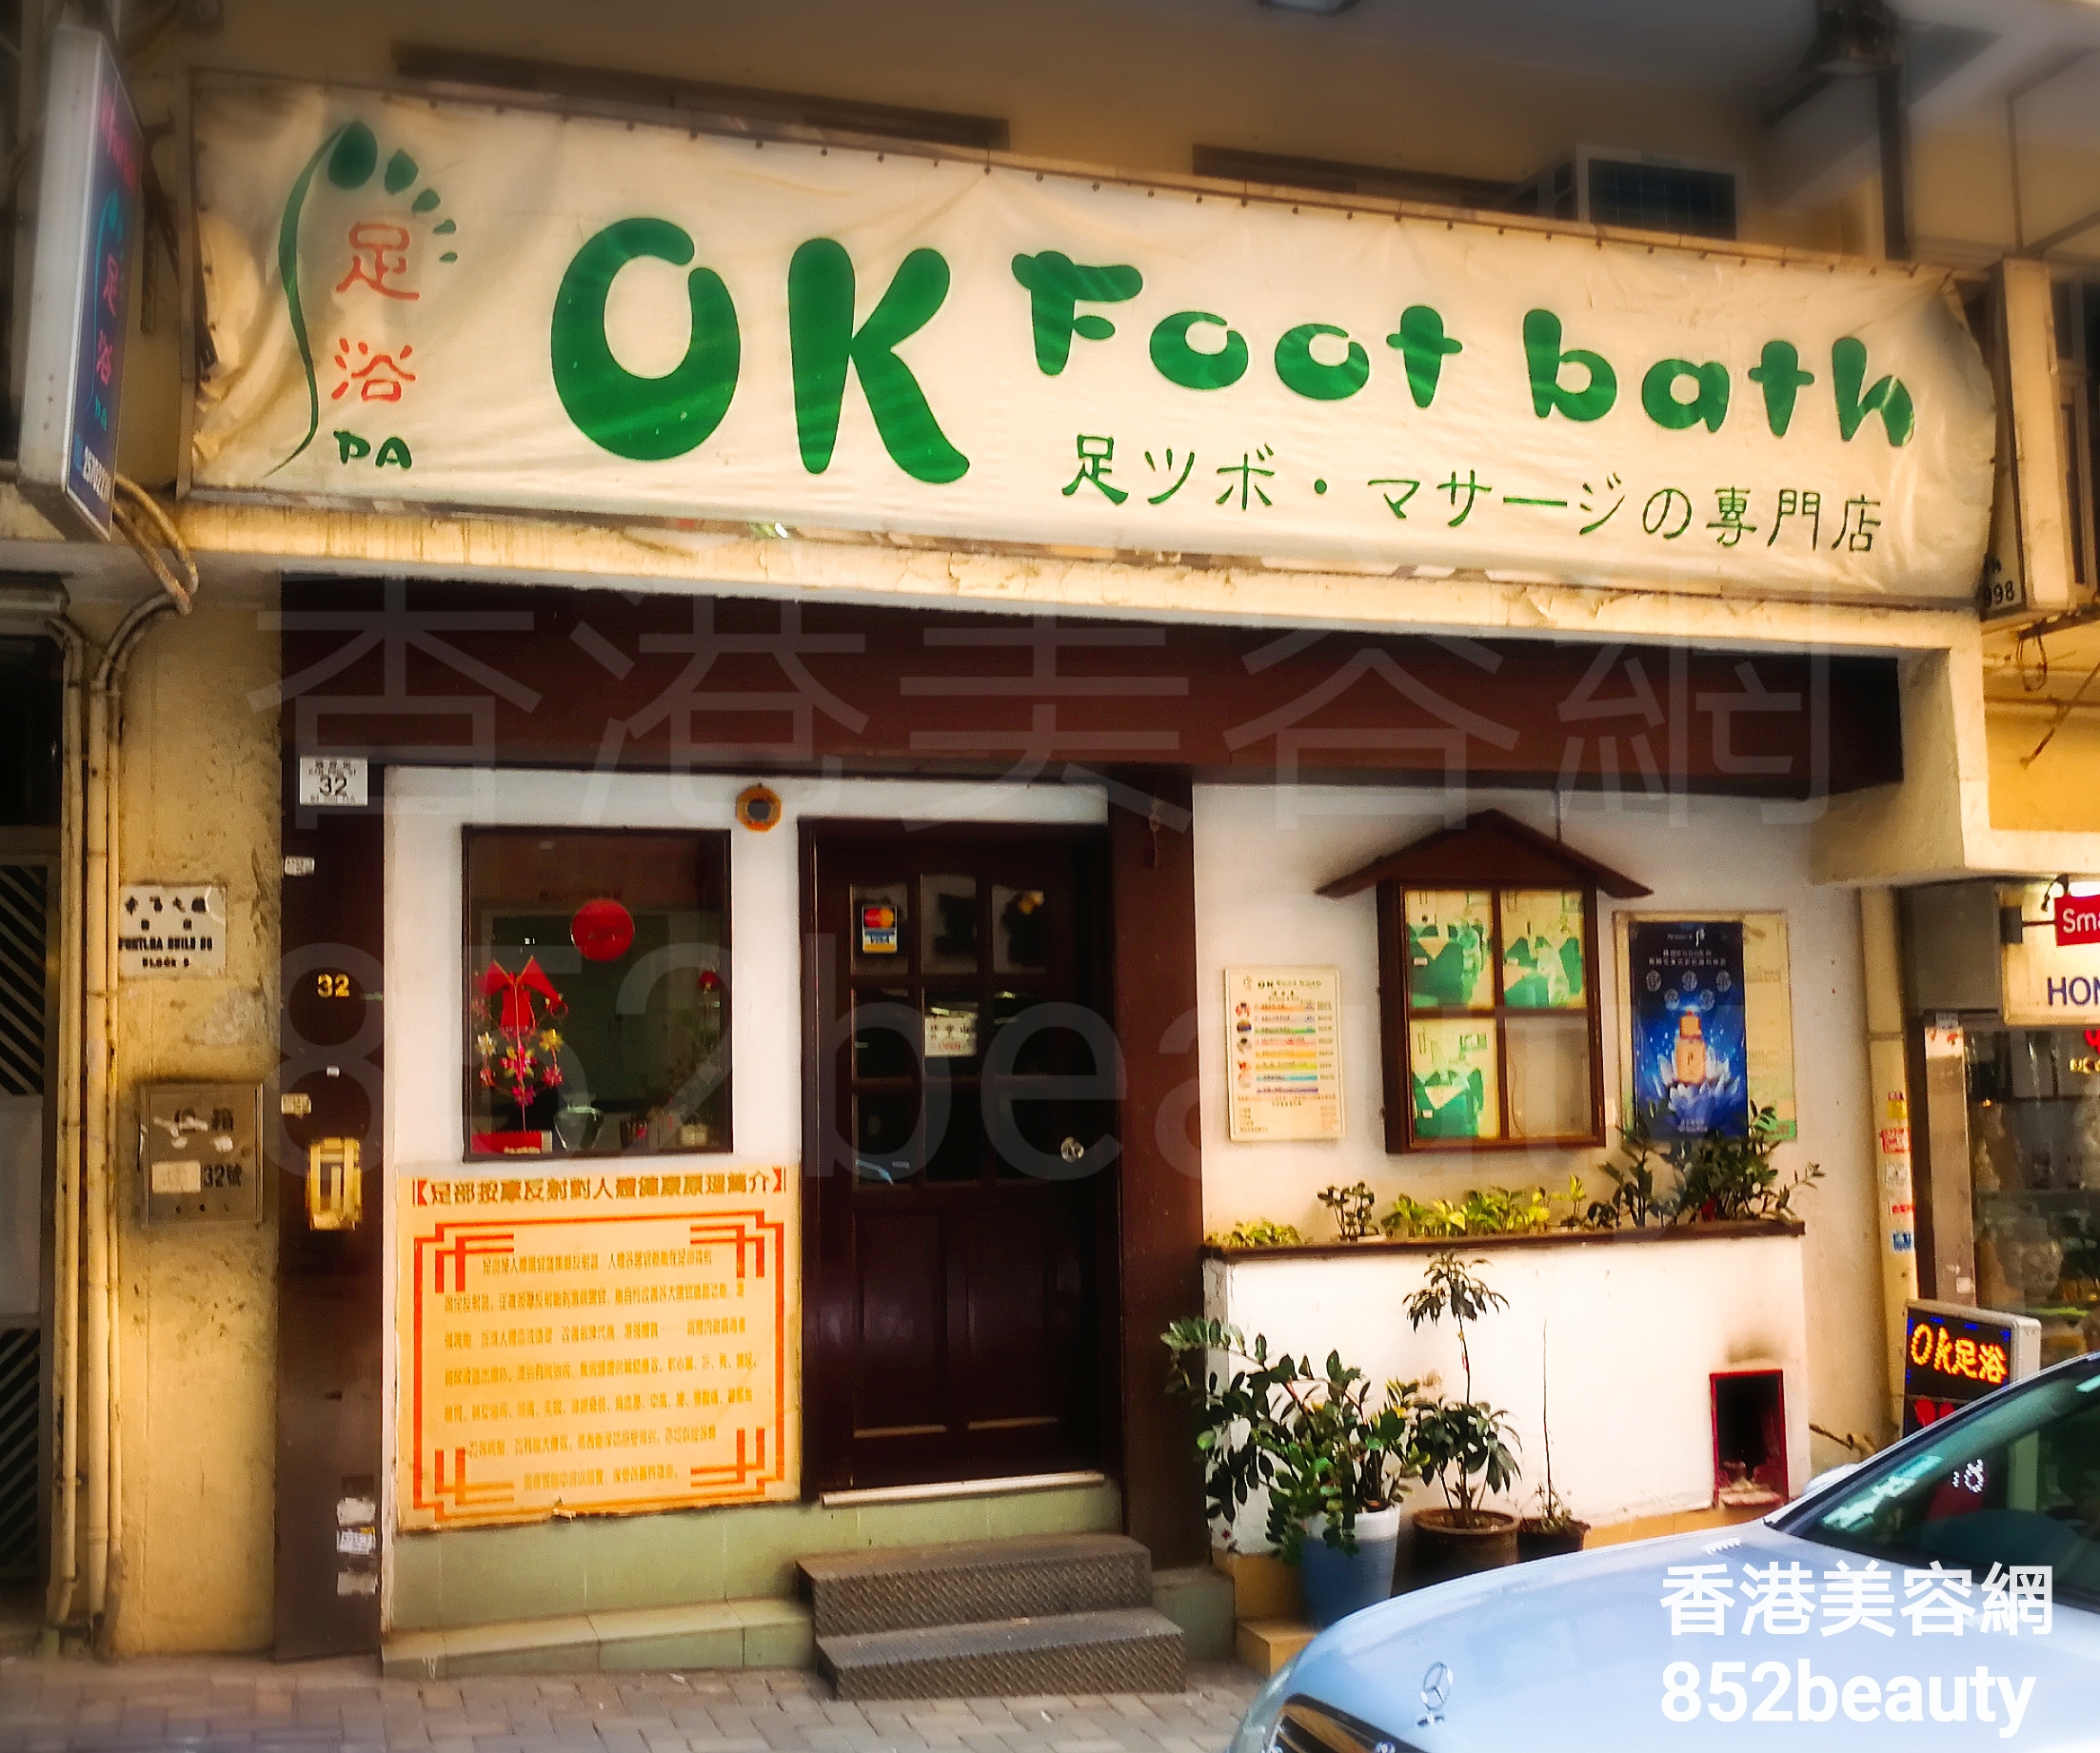 面部护理: OK Foot bath